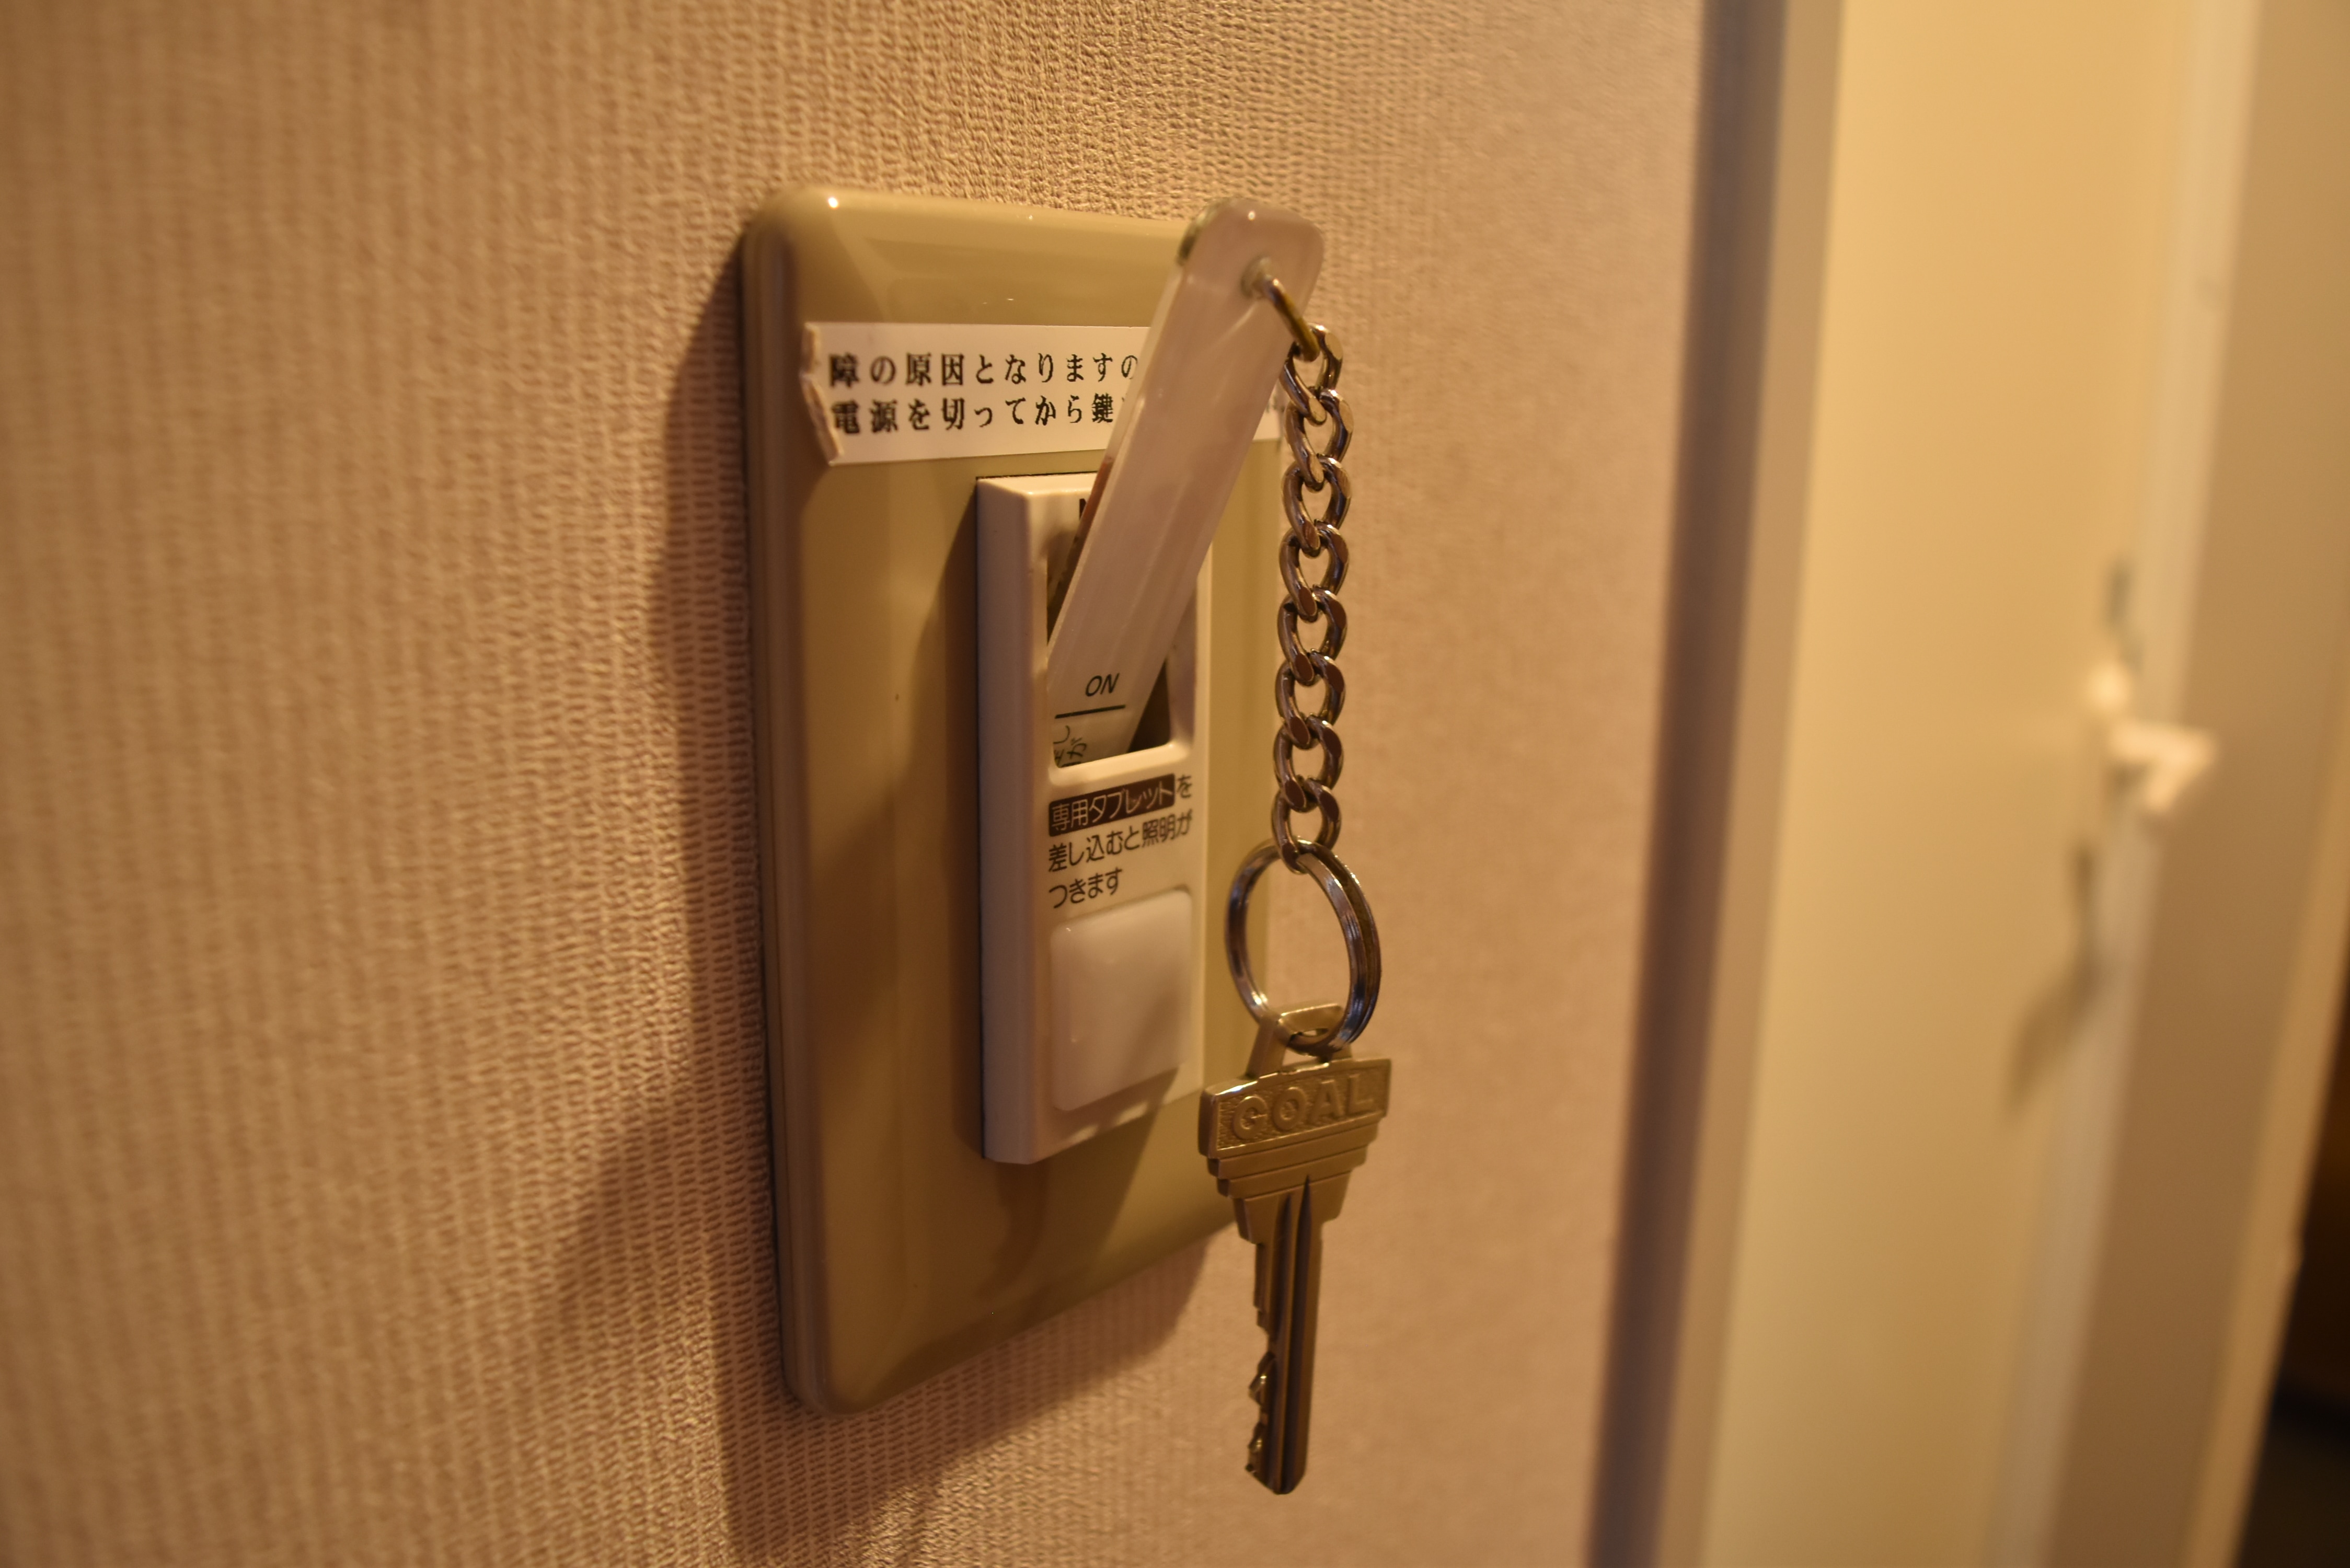 Ini adalah sistem yang menyalakan listrik di dalam ruangan dengan memasukkan kunci kamar.